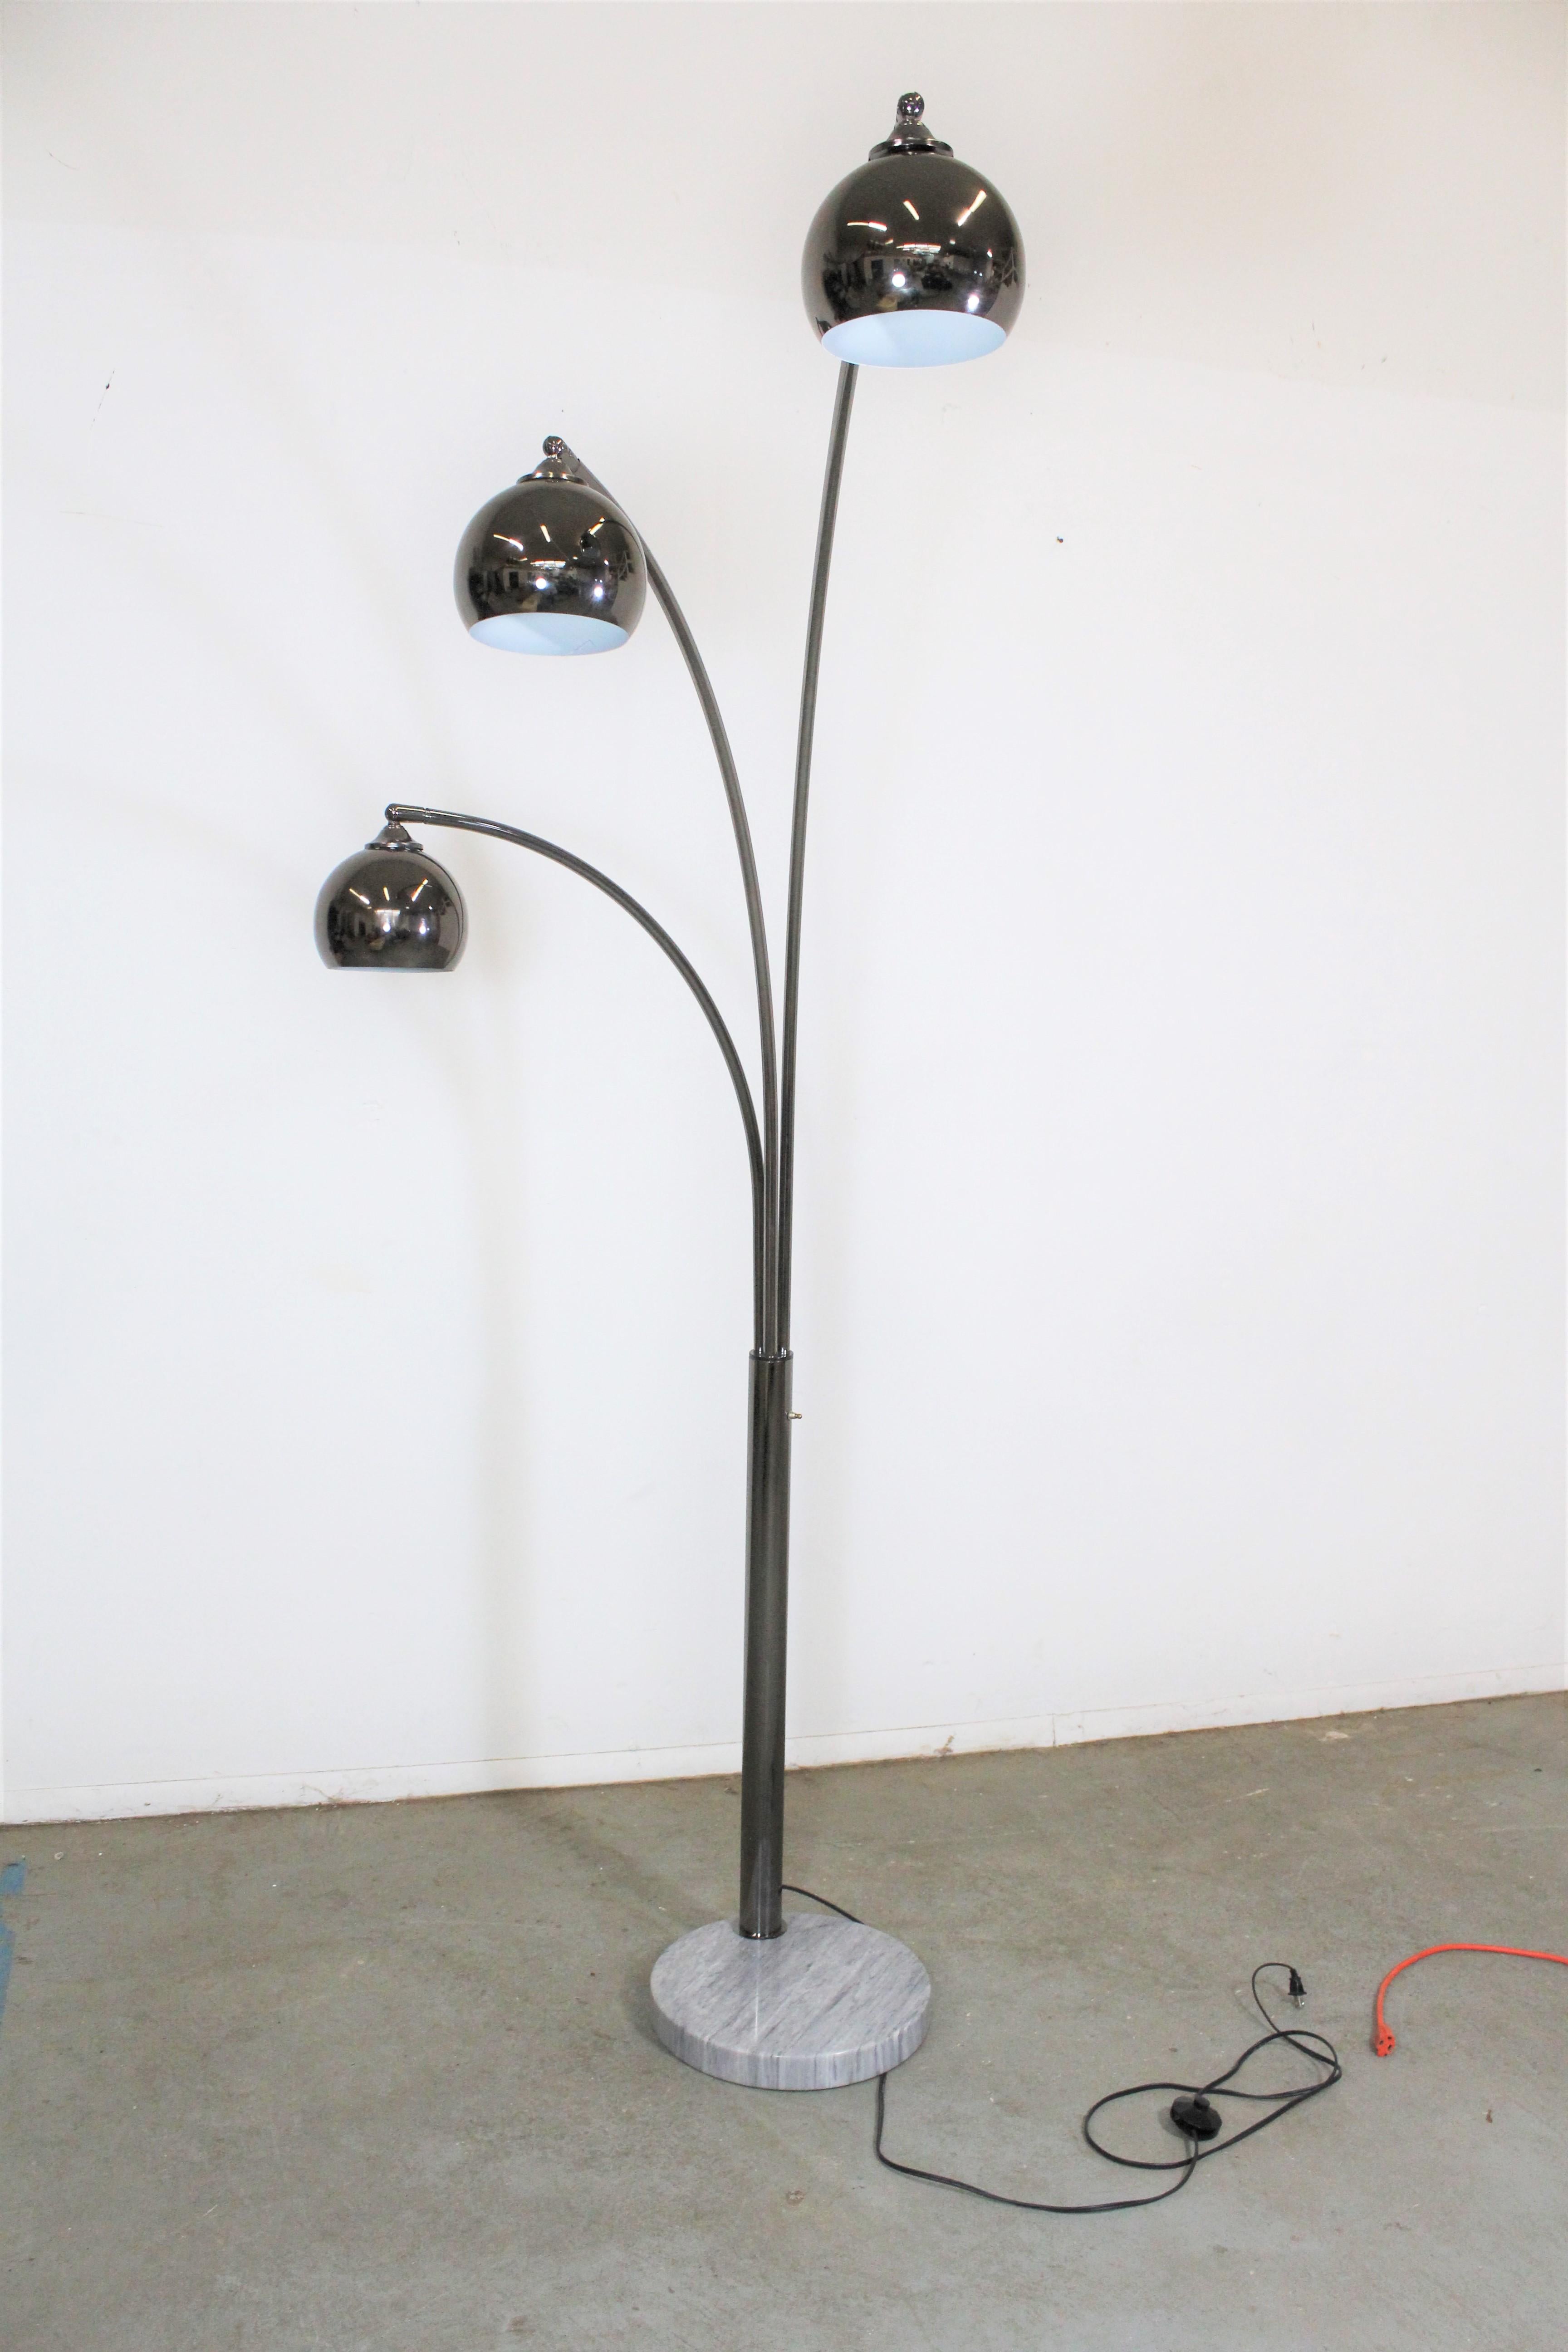 Nous vous proposons un superbe lampadaire italien vintage en chrome et marbre. Comprend une base en marbre avec 3 tiges chromées pivotantes en forme d'arc et 3 ampoules qui pivotent. Les têtes pivotent de gauche à droite et le pivot. Les bras